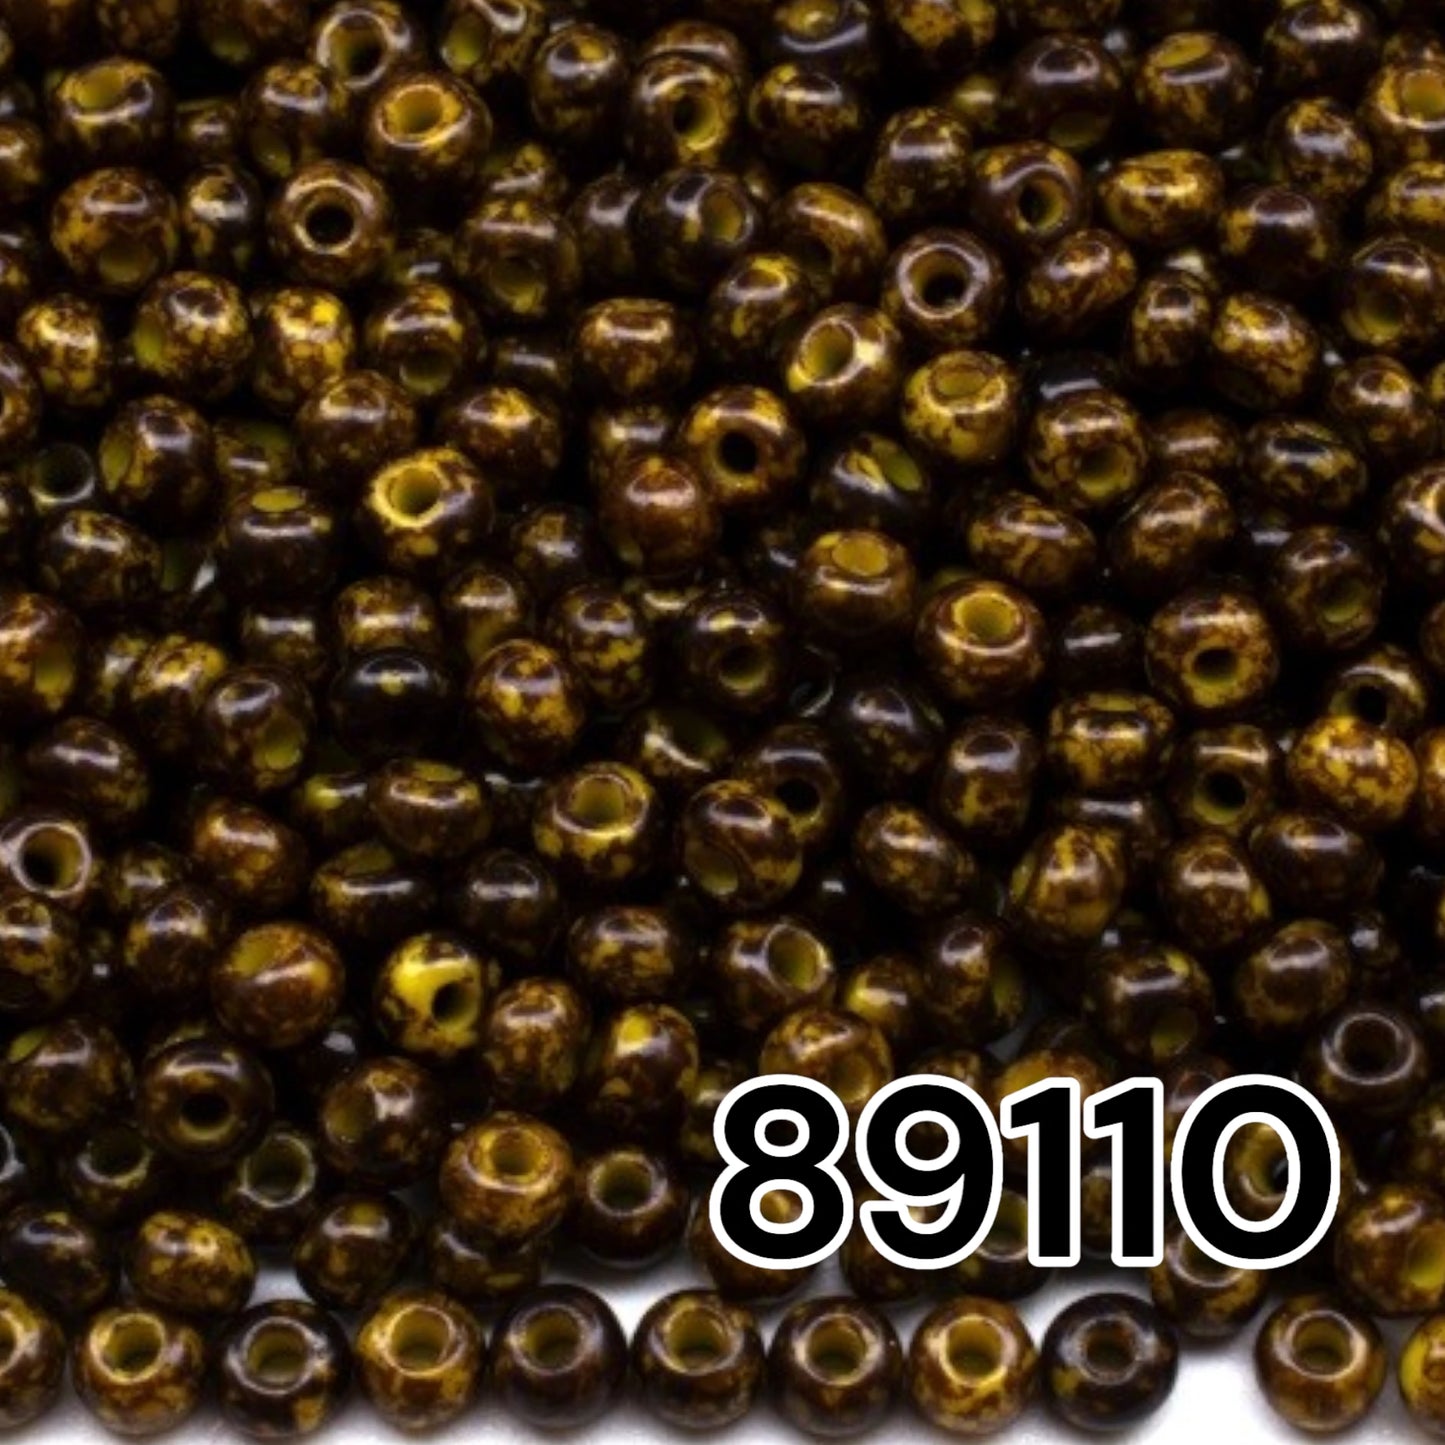 89110 Perles de rocailles tchèques PRECIOSA rondes 10/0 Travertin Brun Jaune.